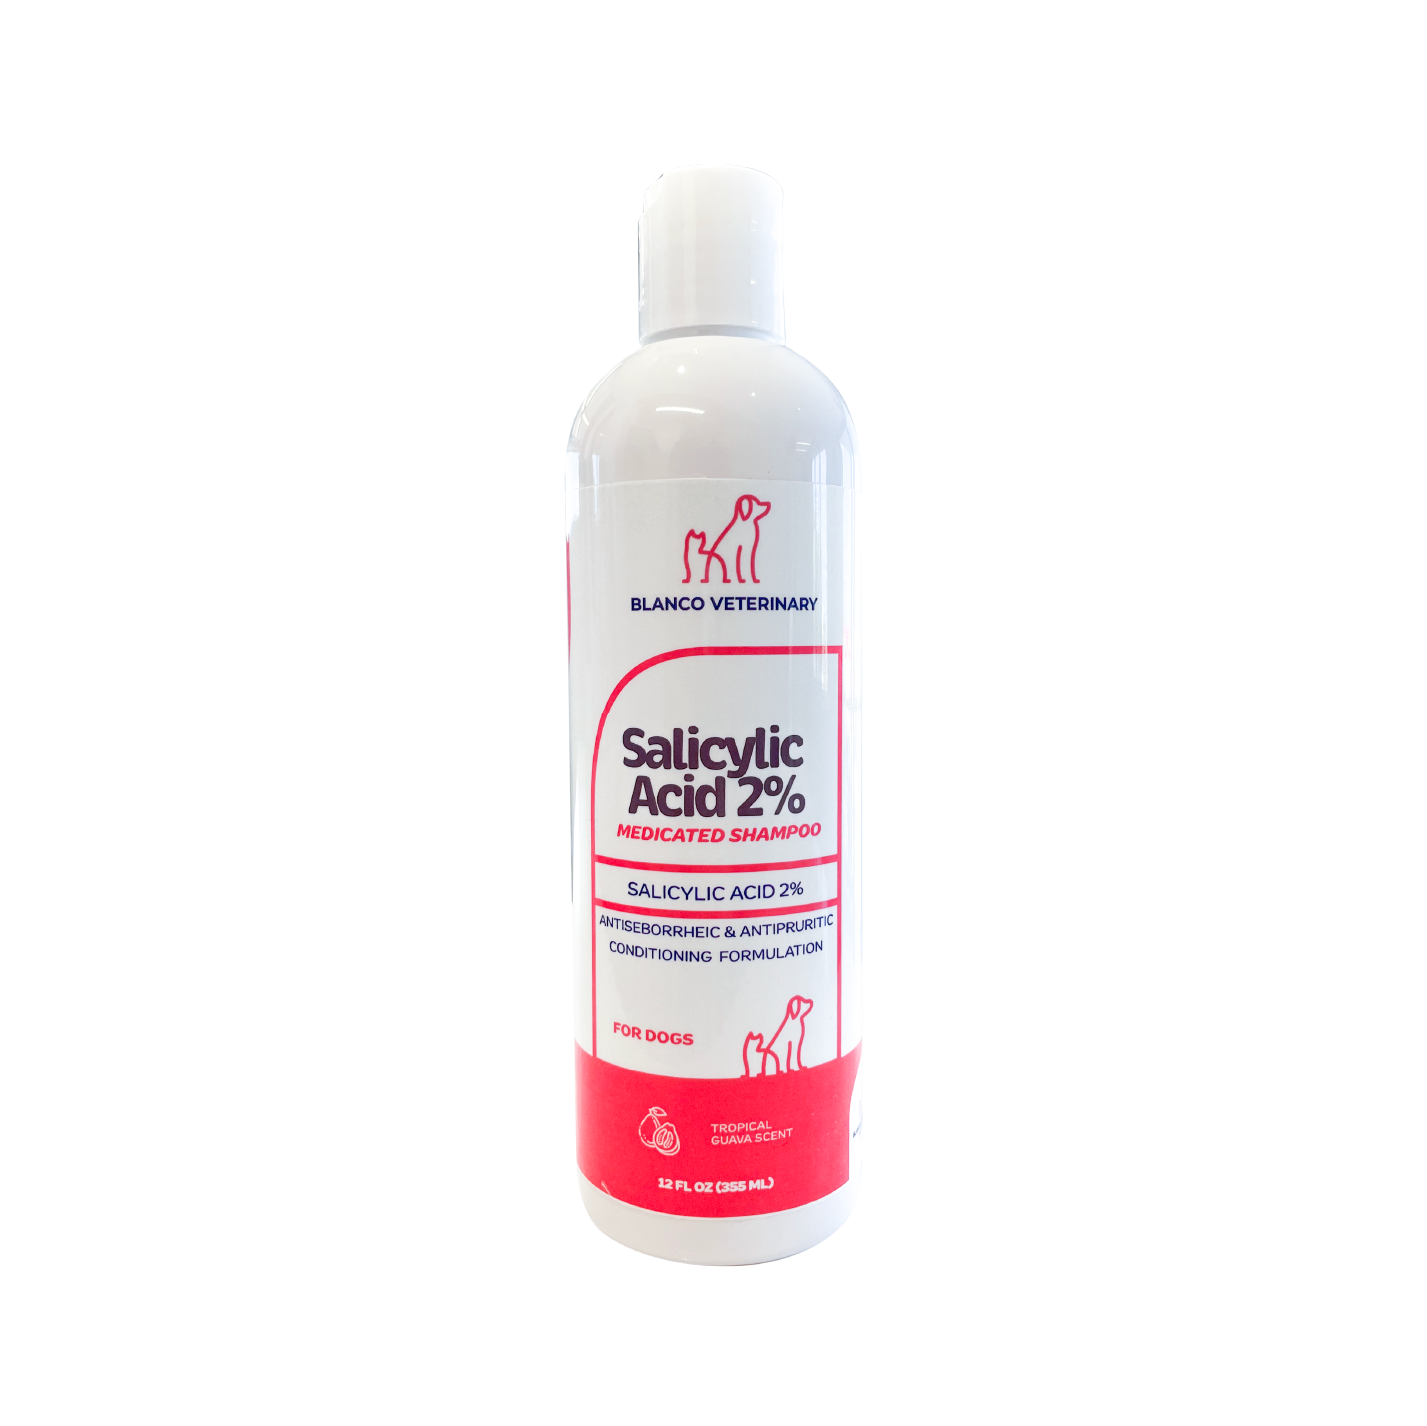 Blanco Veterinary Salicylic Acid 2% Medicated Shampoo